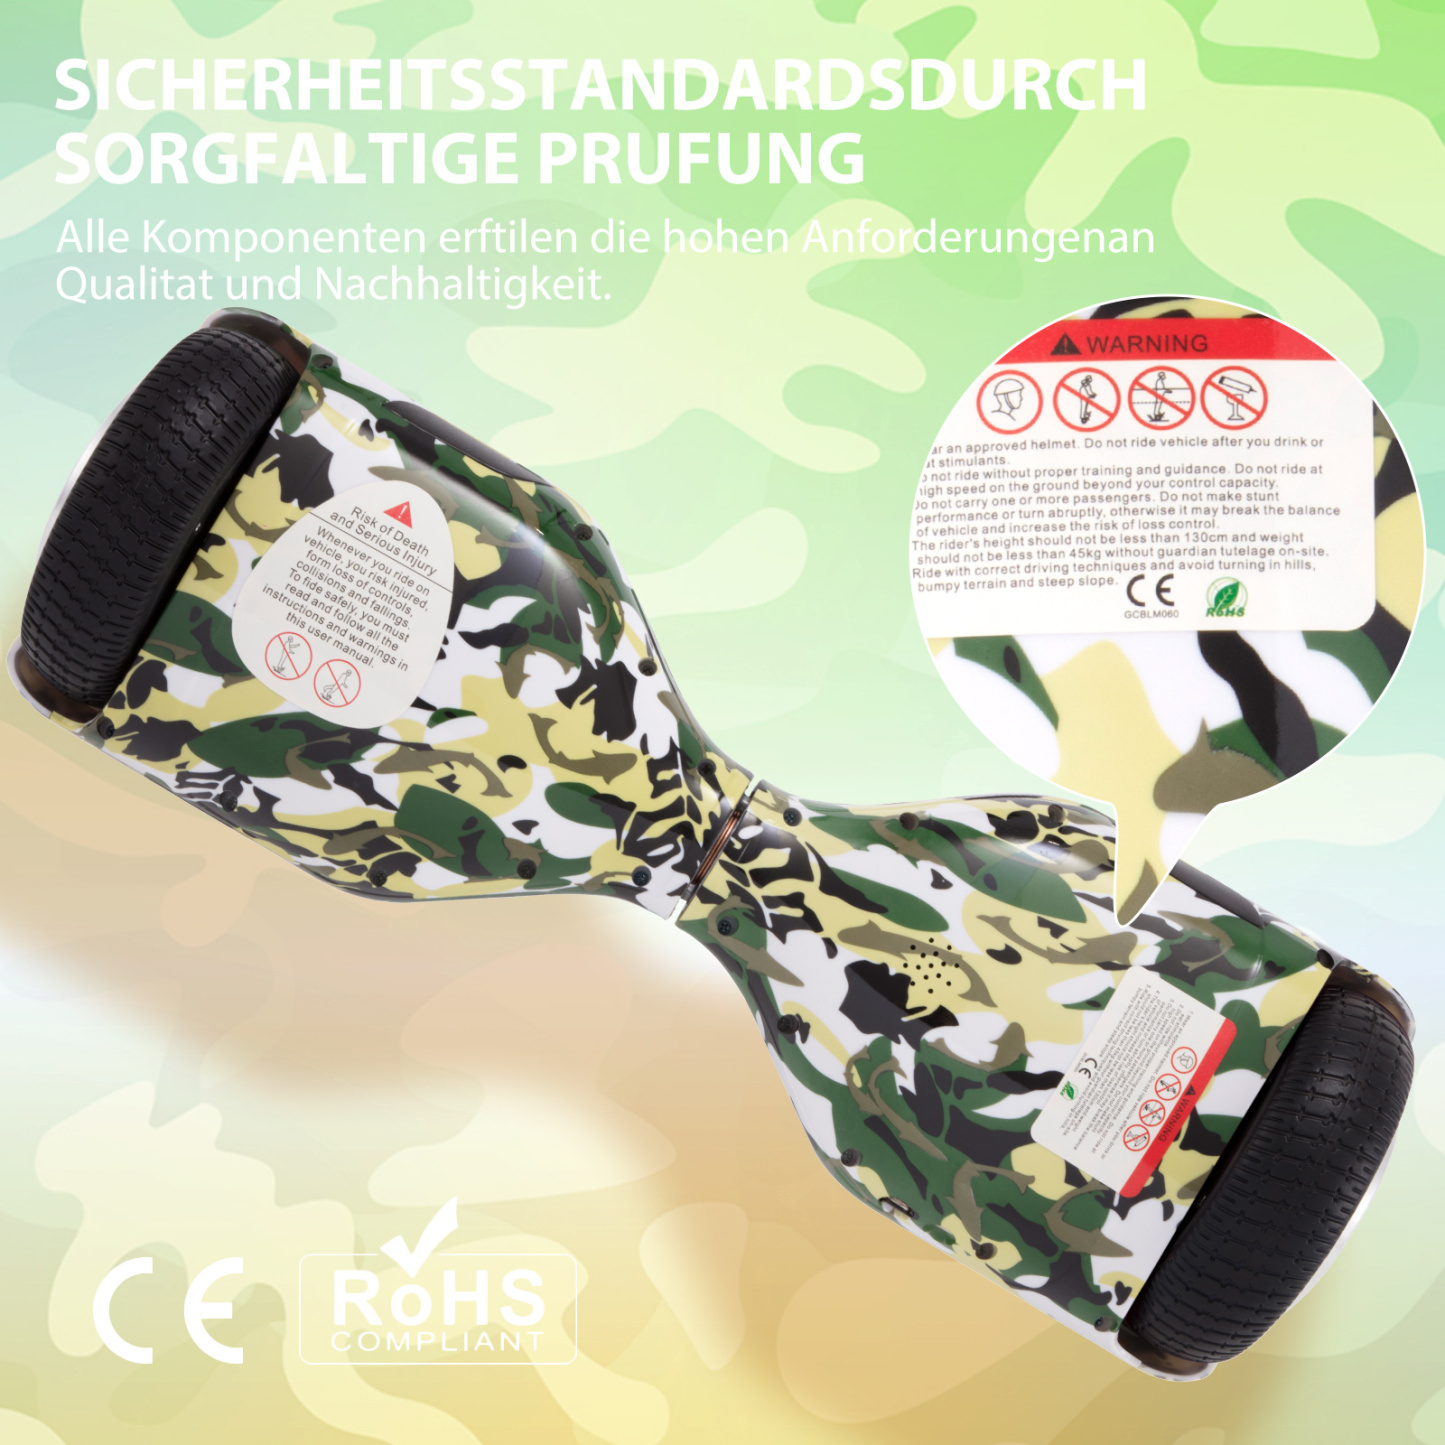 Neues 6,5" Camouflage Hoverboard grün mit Bluetooth Musik Lautsprecher und LED Licht - 500W 12km/h